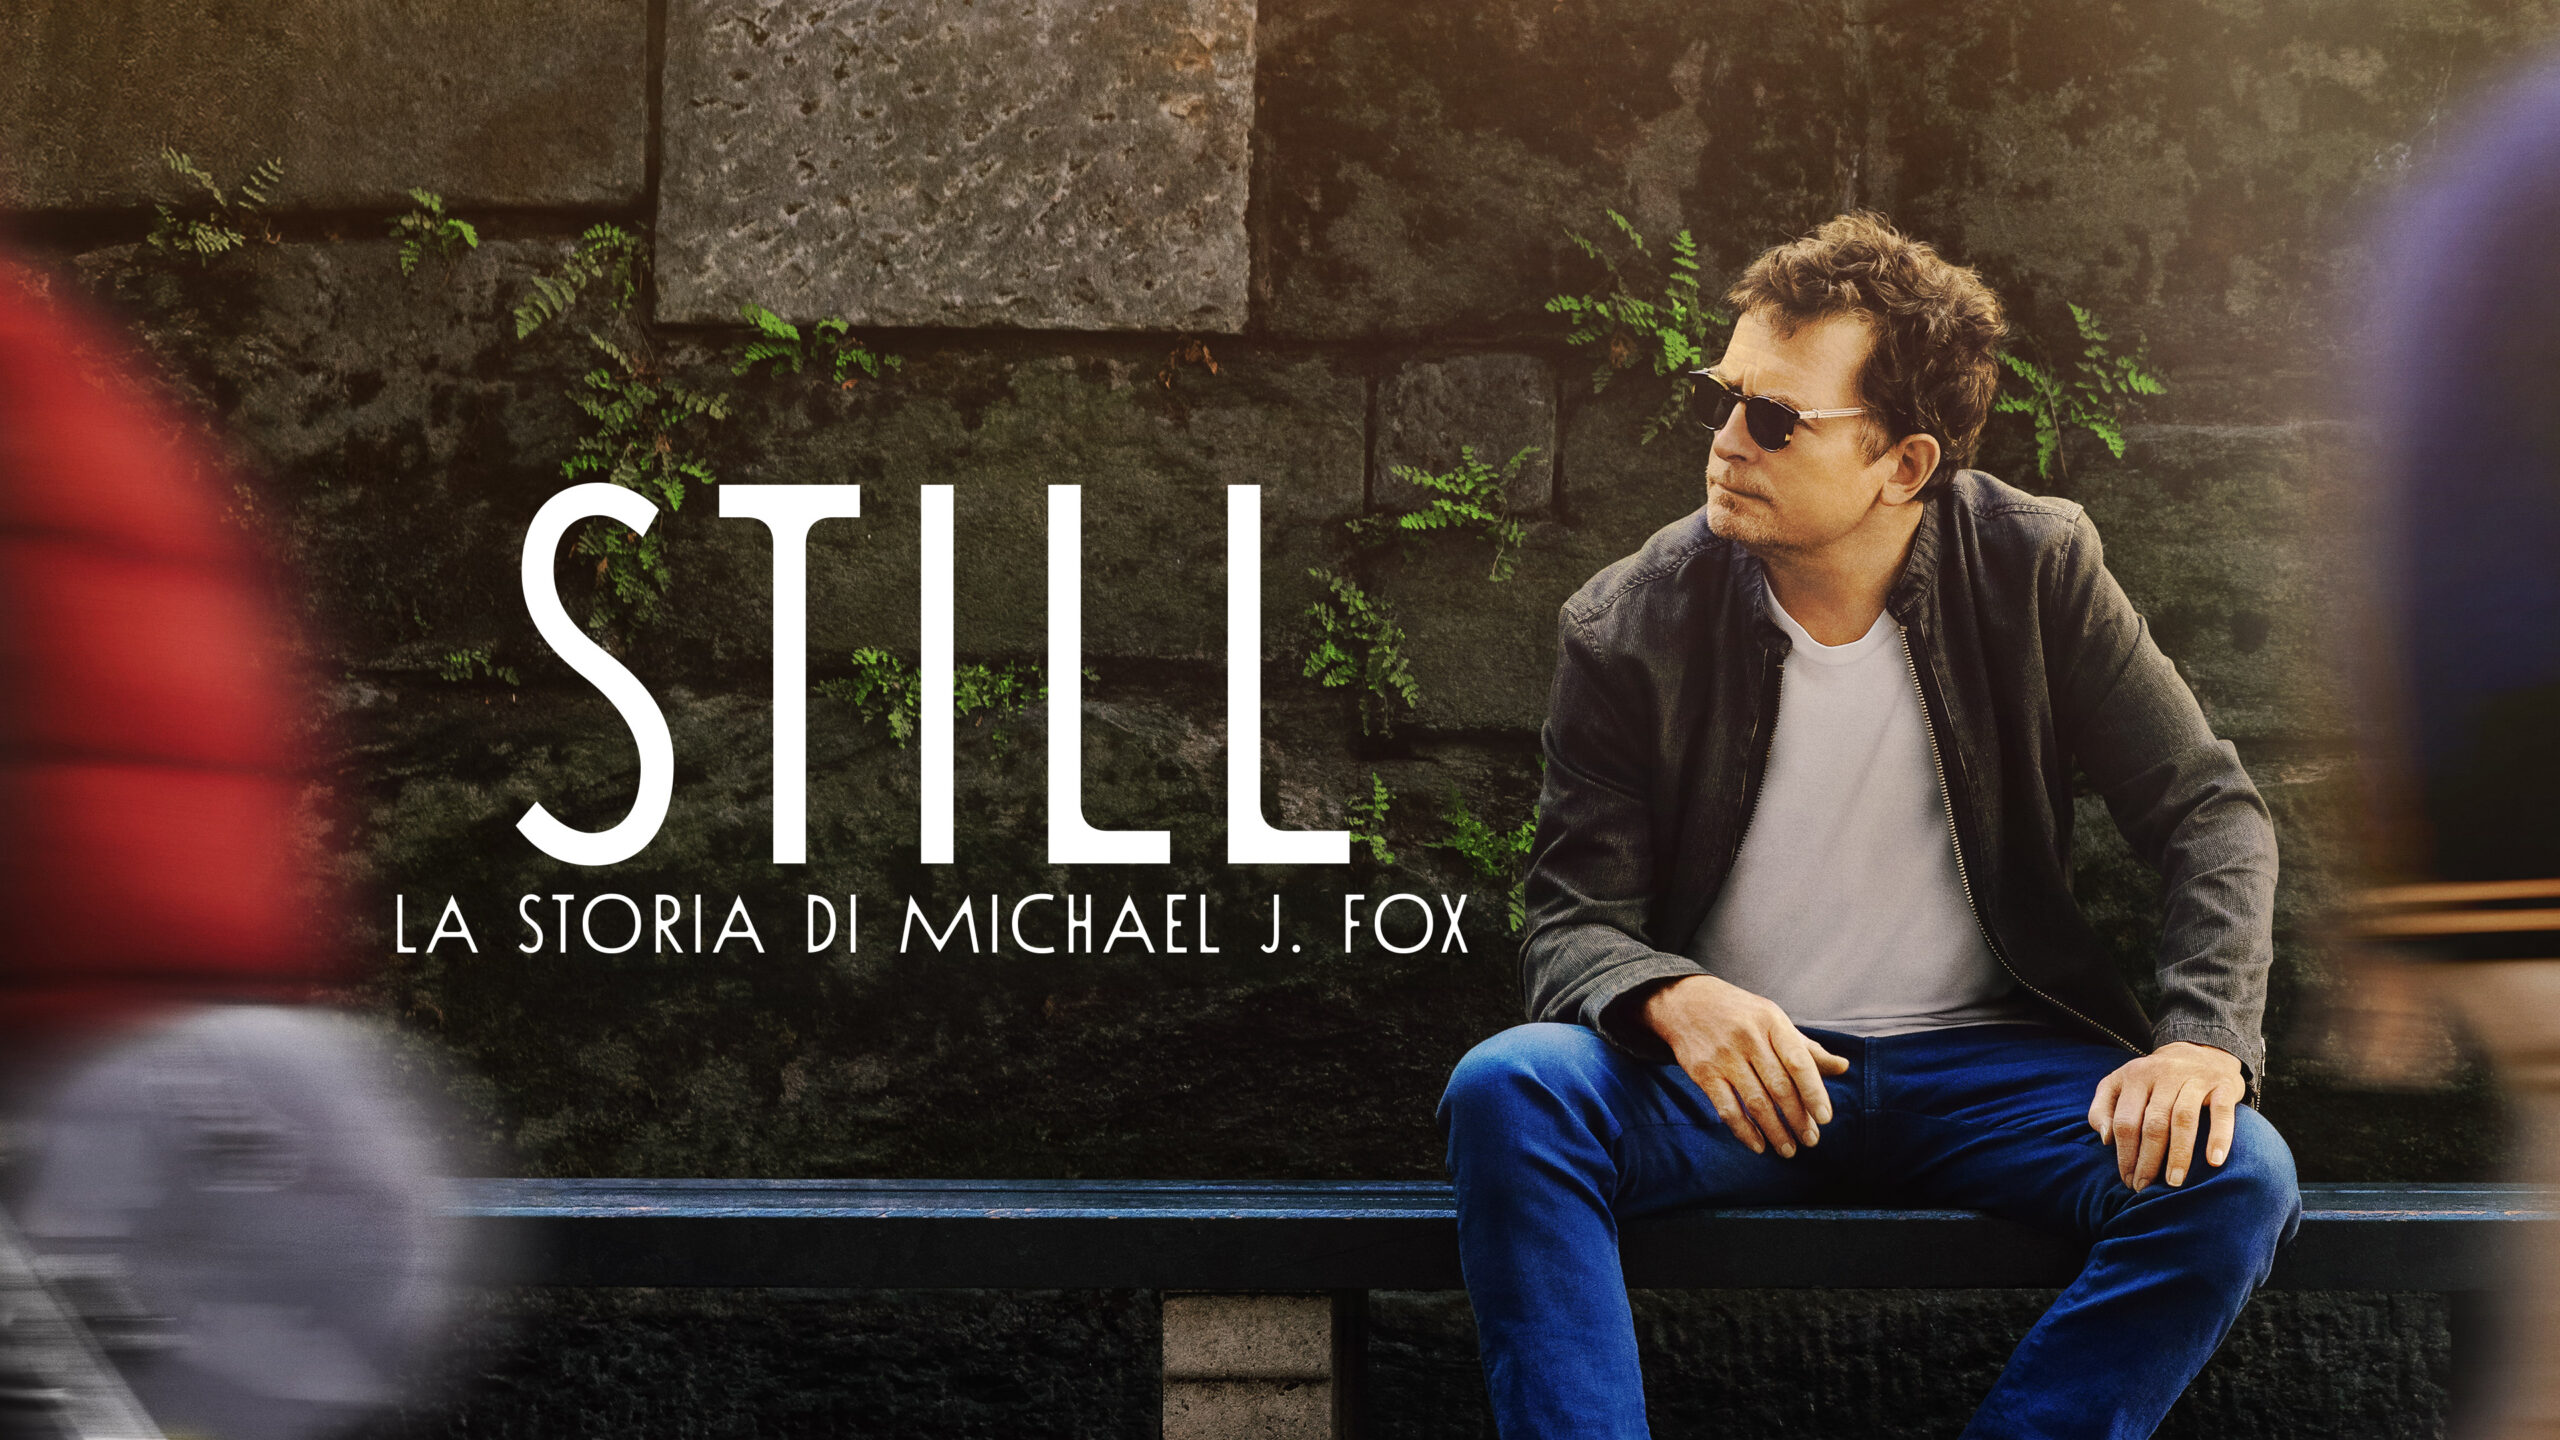 STILL: la storia di Michael J. Fox - Poster [credit: courtesy of Apple]